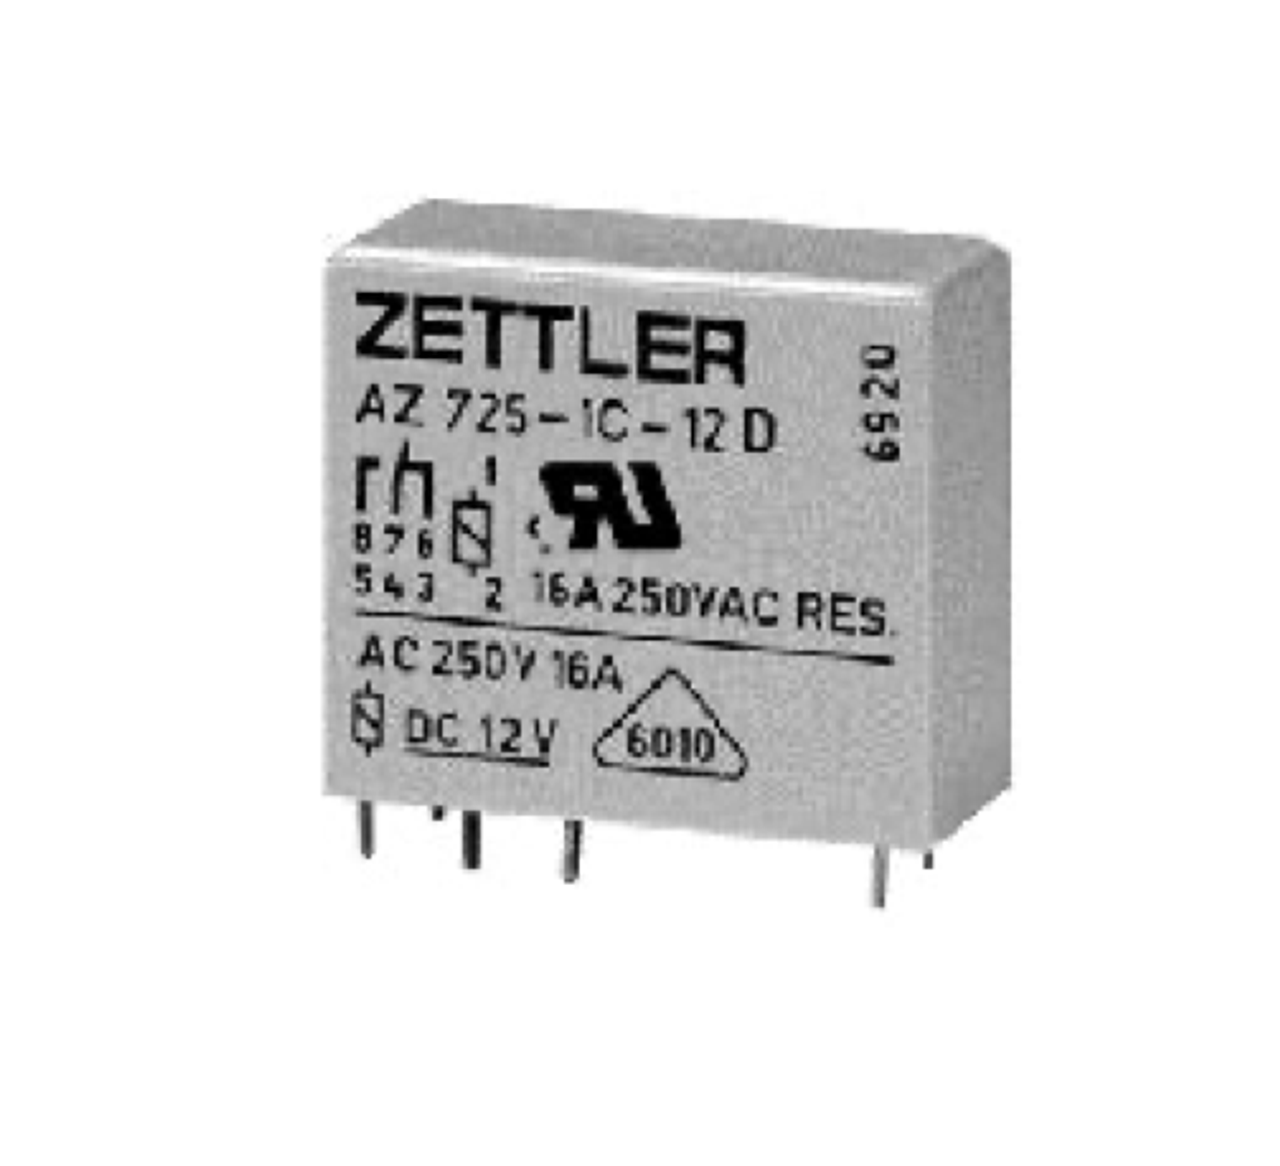 American Zettler AZ725-1C-12DE Power Relay